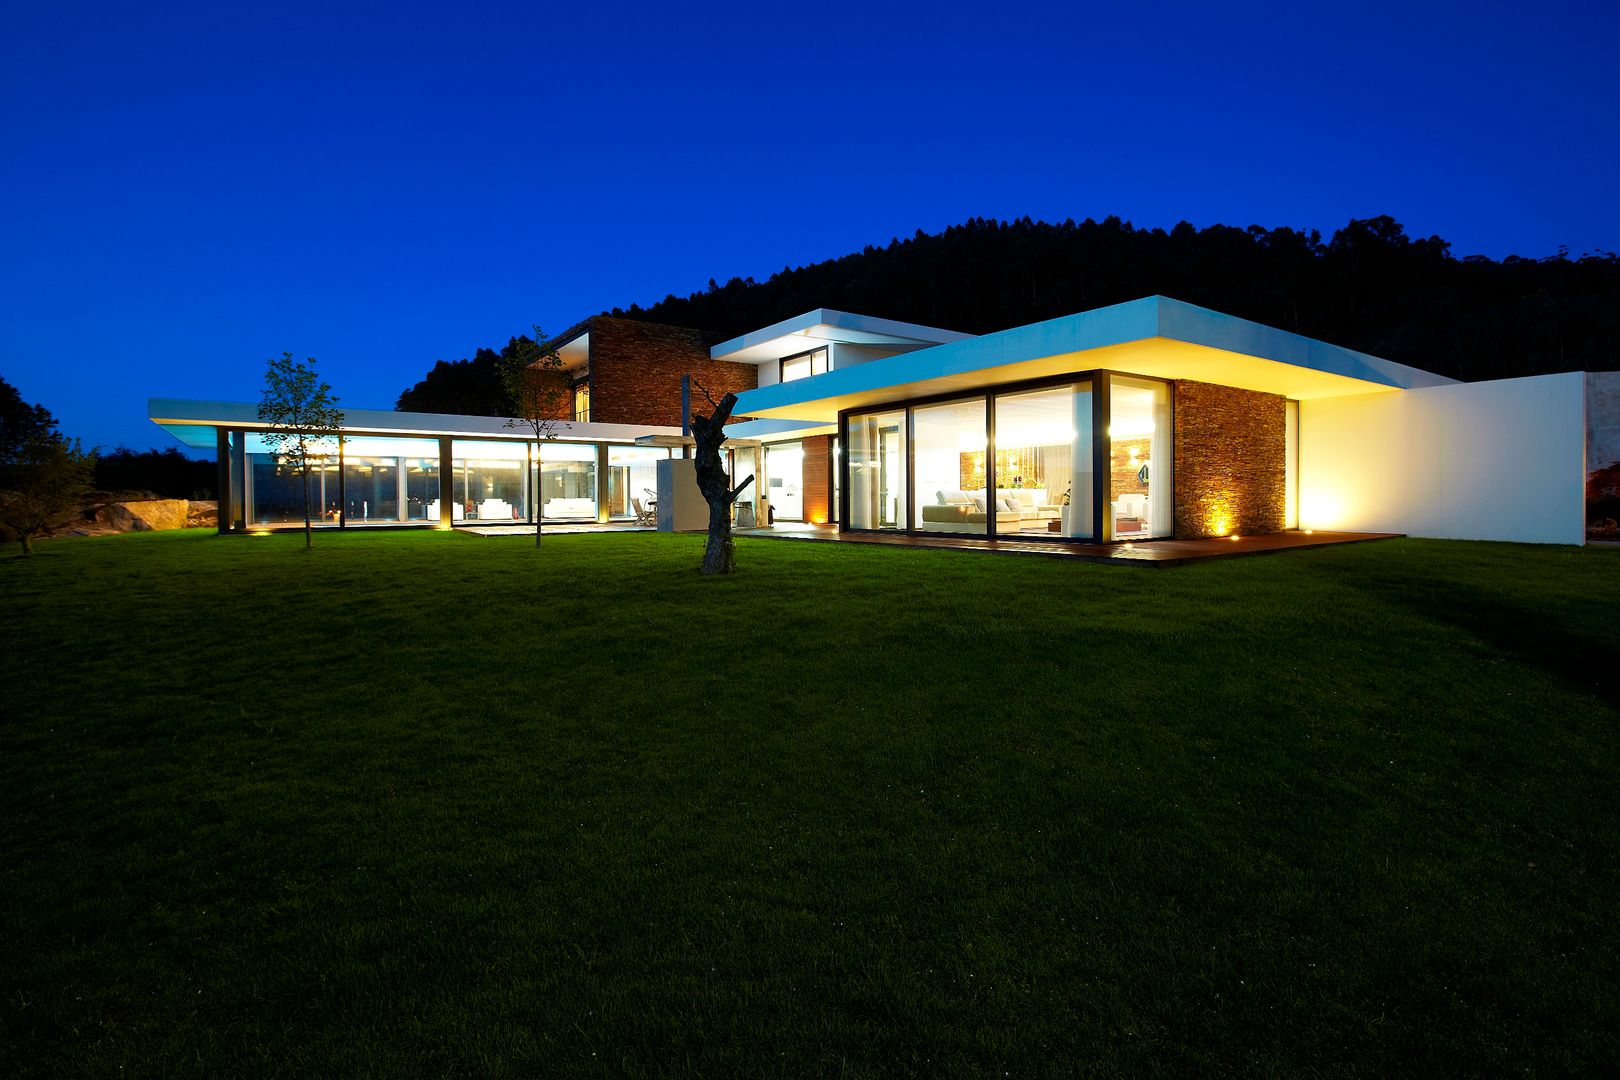 Casa moderna de dimensões generosas e piscina interior, Risco Singular - Arquitectura Lda Risco Singular - Arquitectura Lda Дома в стиле минимализм